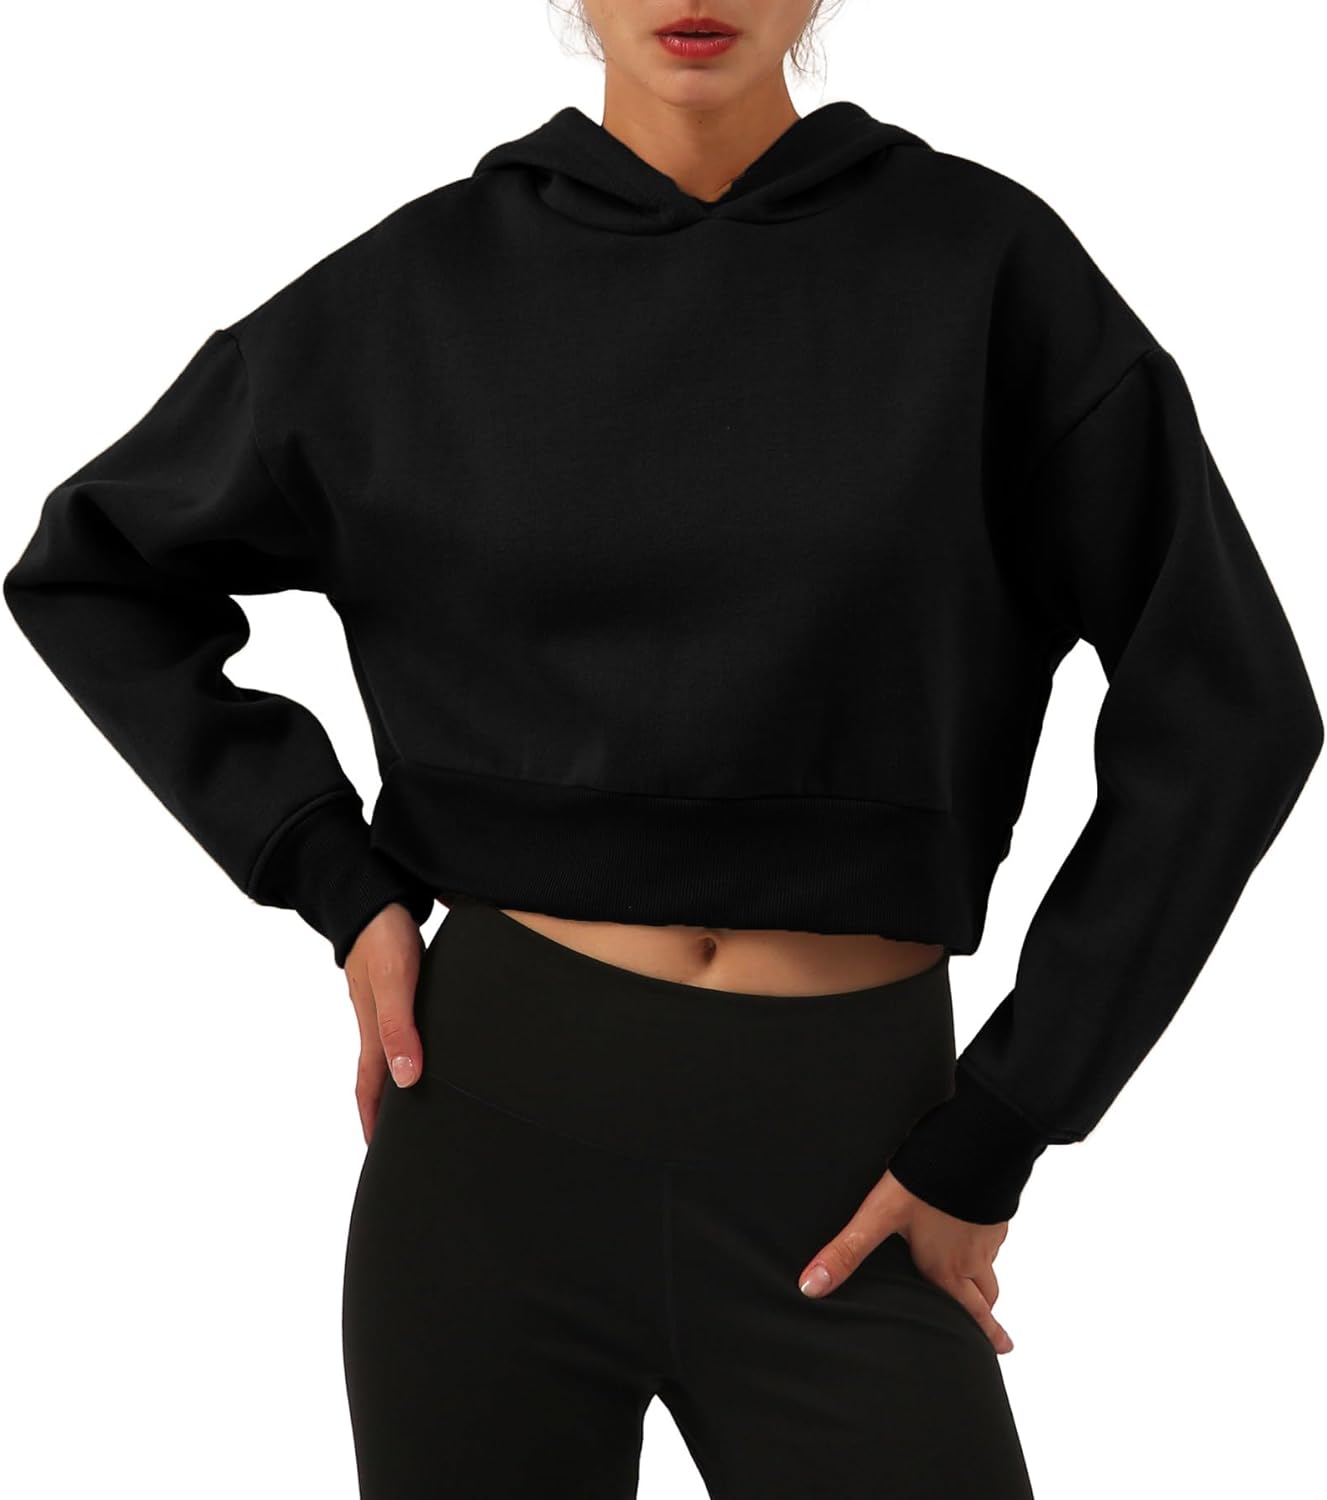 NTG Fad Black / XX-Large Women’s Fleece Cropped Hoodies Casual Crop Tops